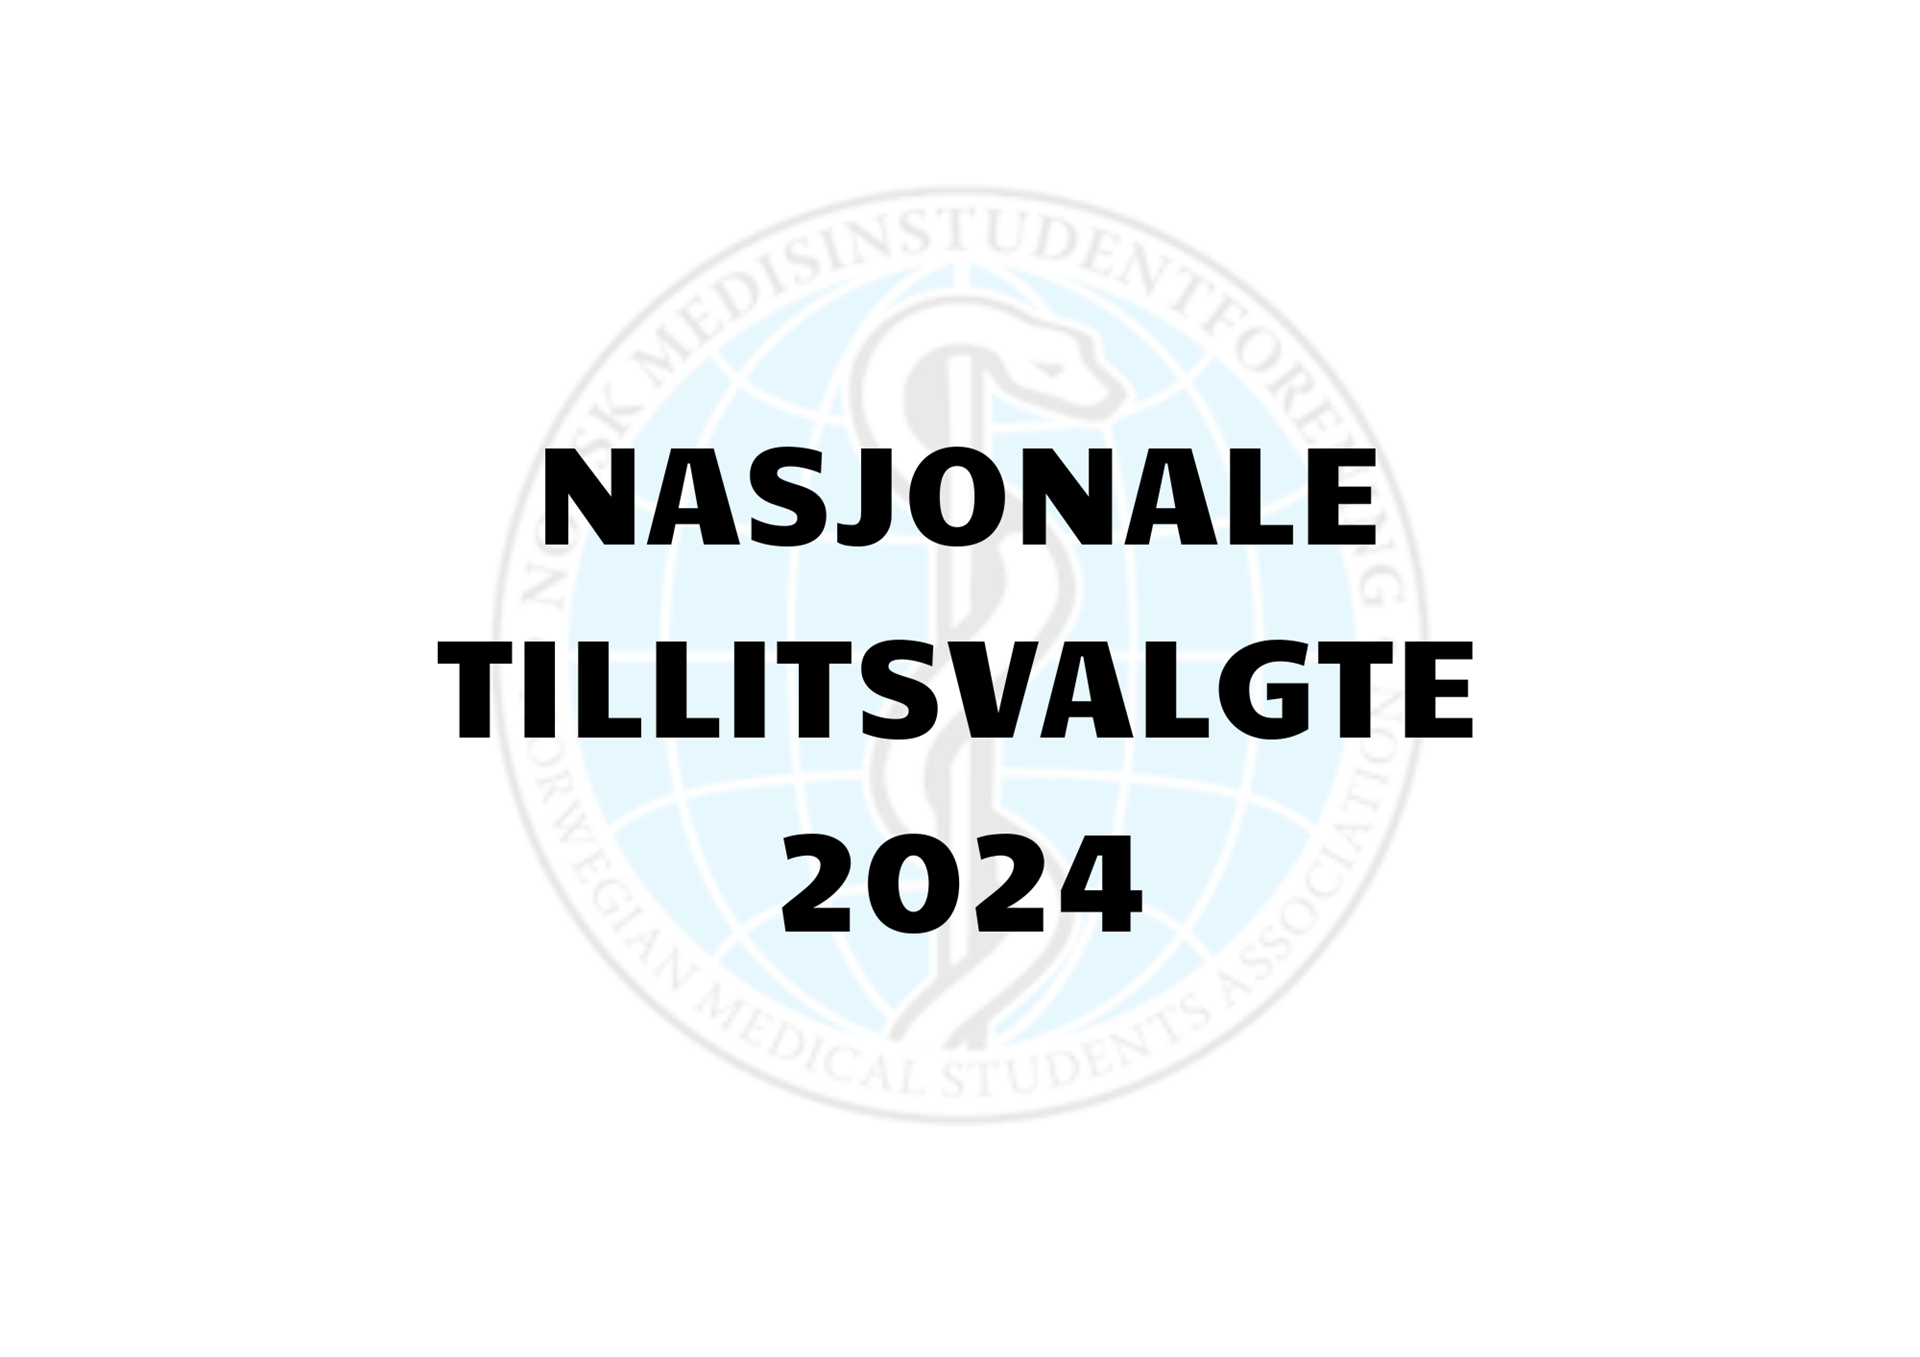 Nmf-logo med teksten Nasjonale tillitsvalgte 2024